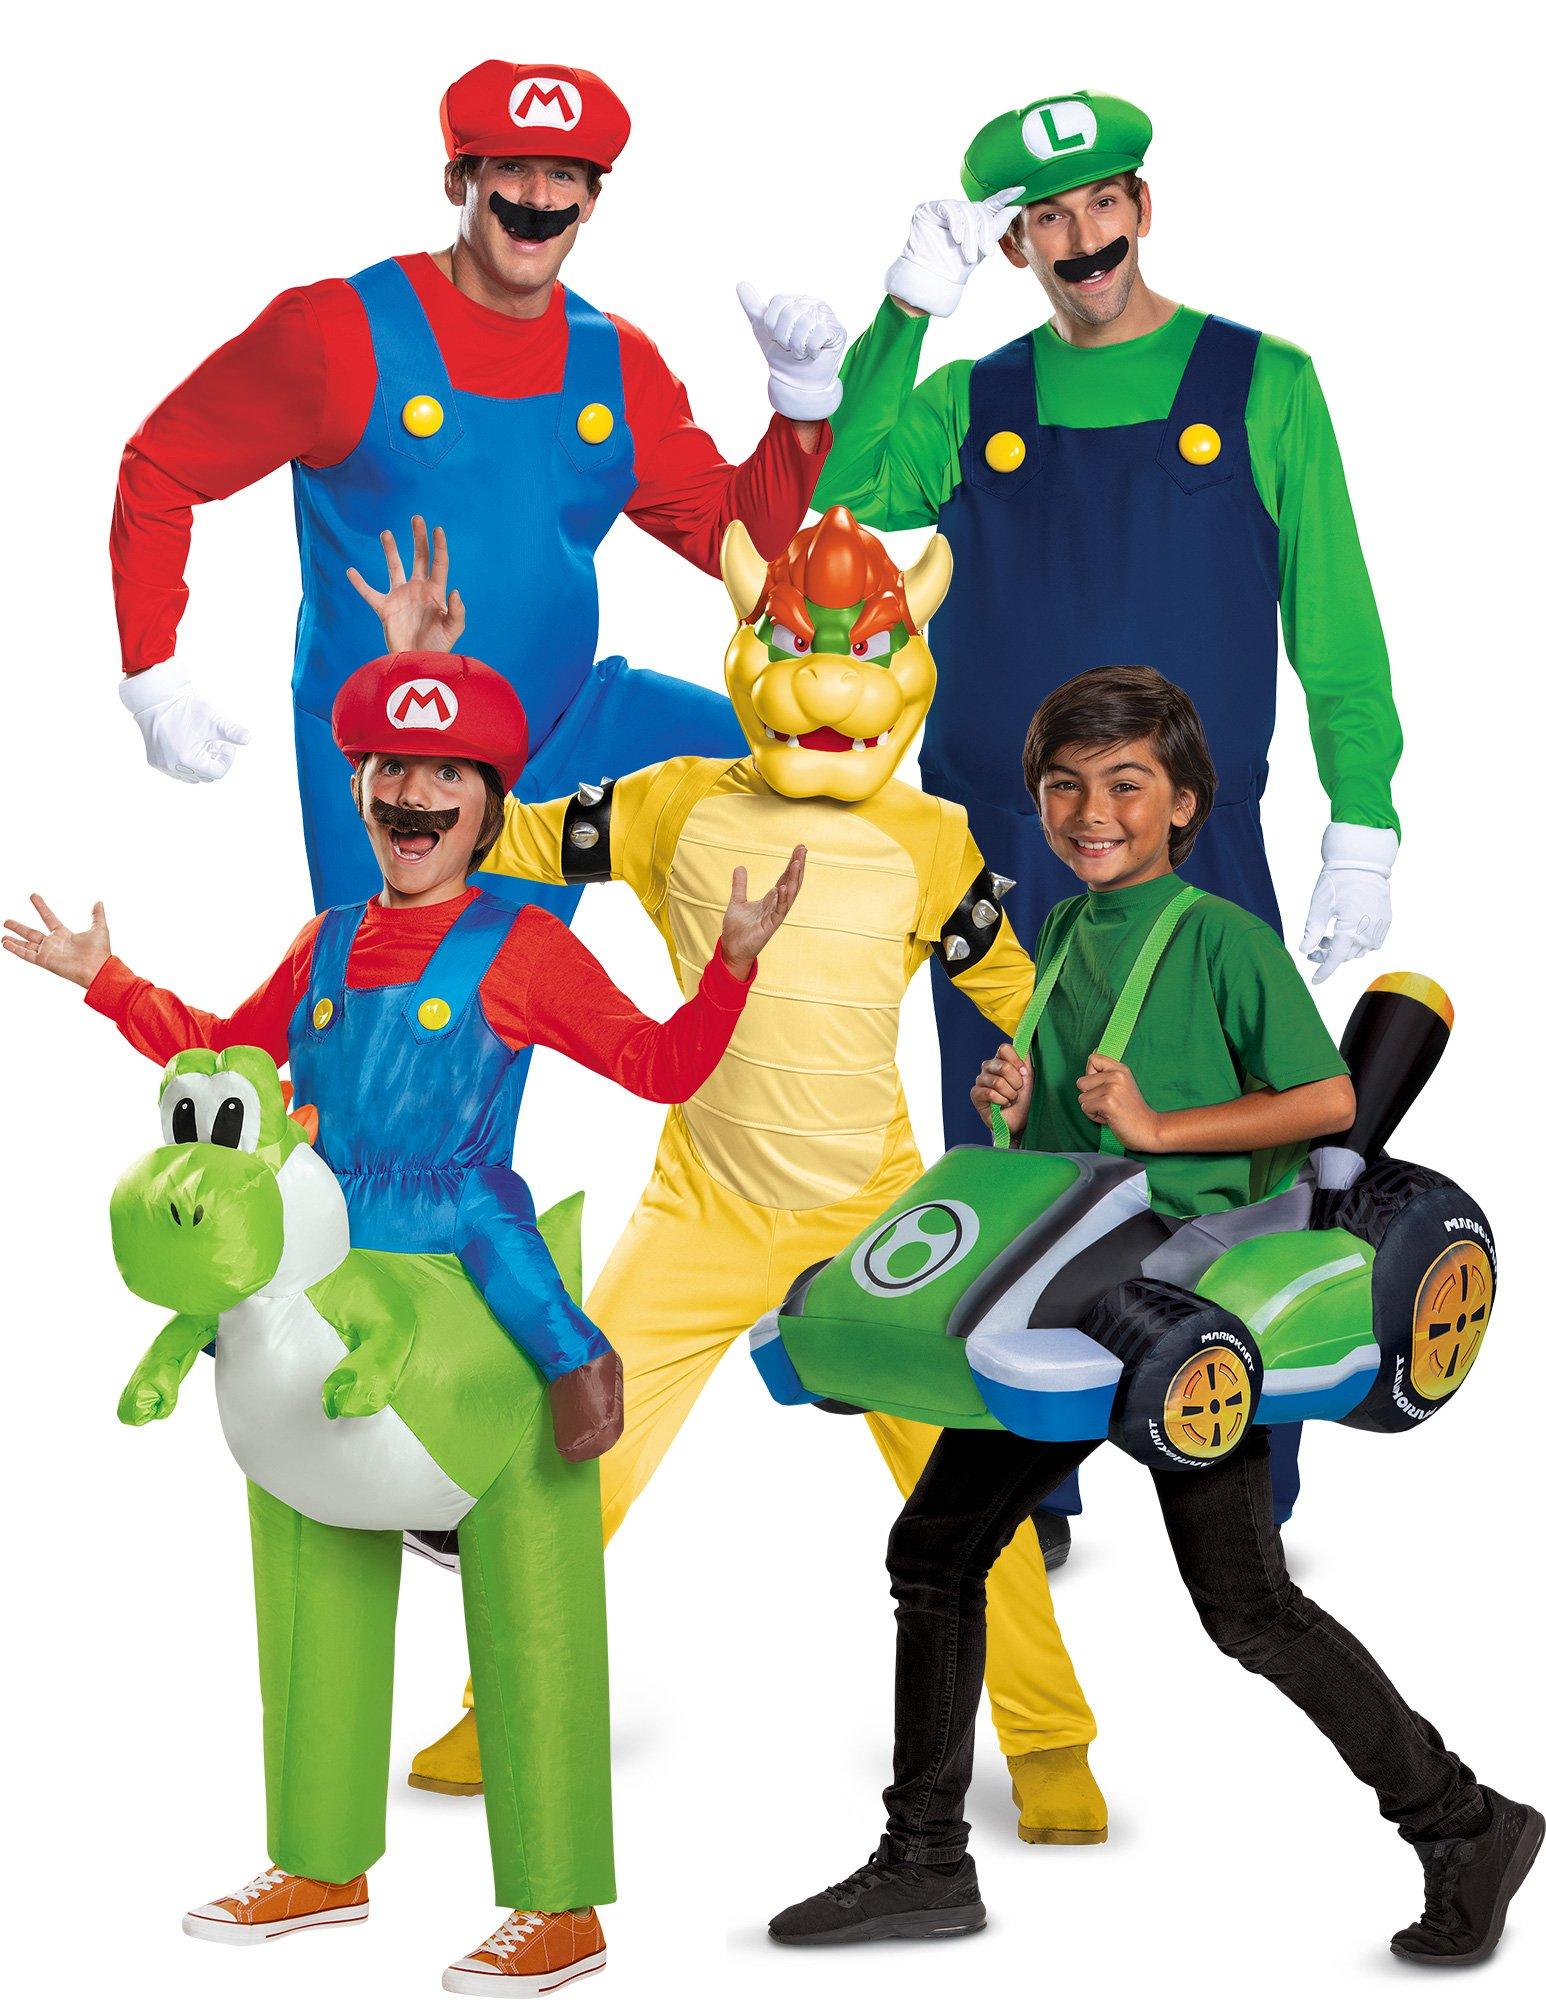 Adult Luigi Costume - Mario Bros 